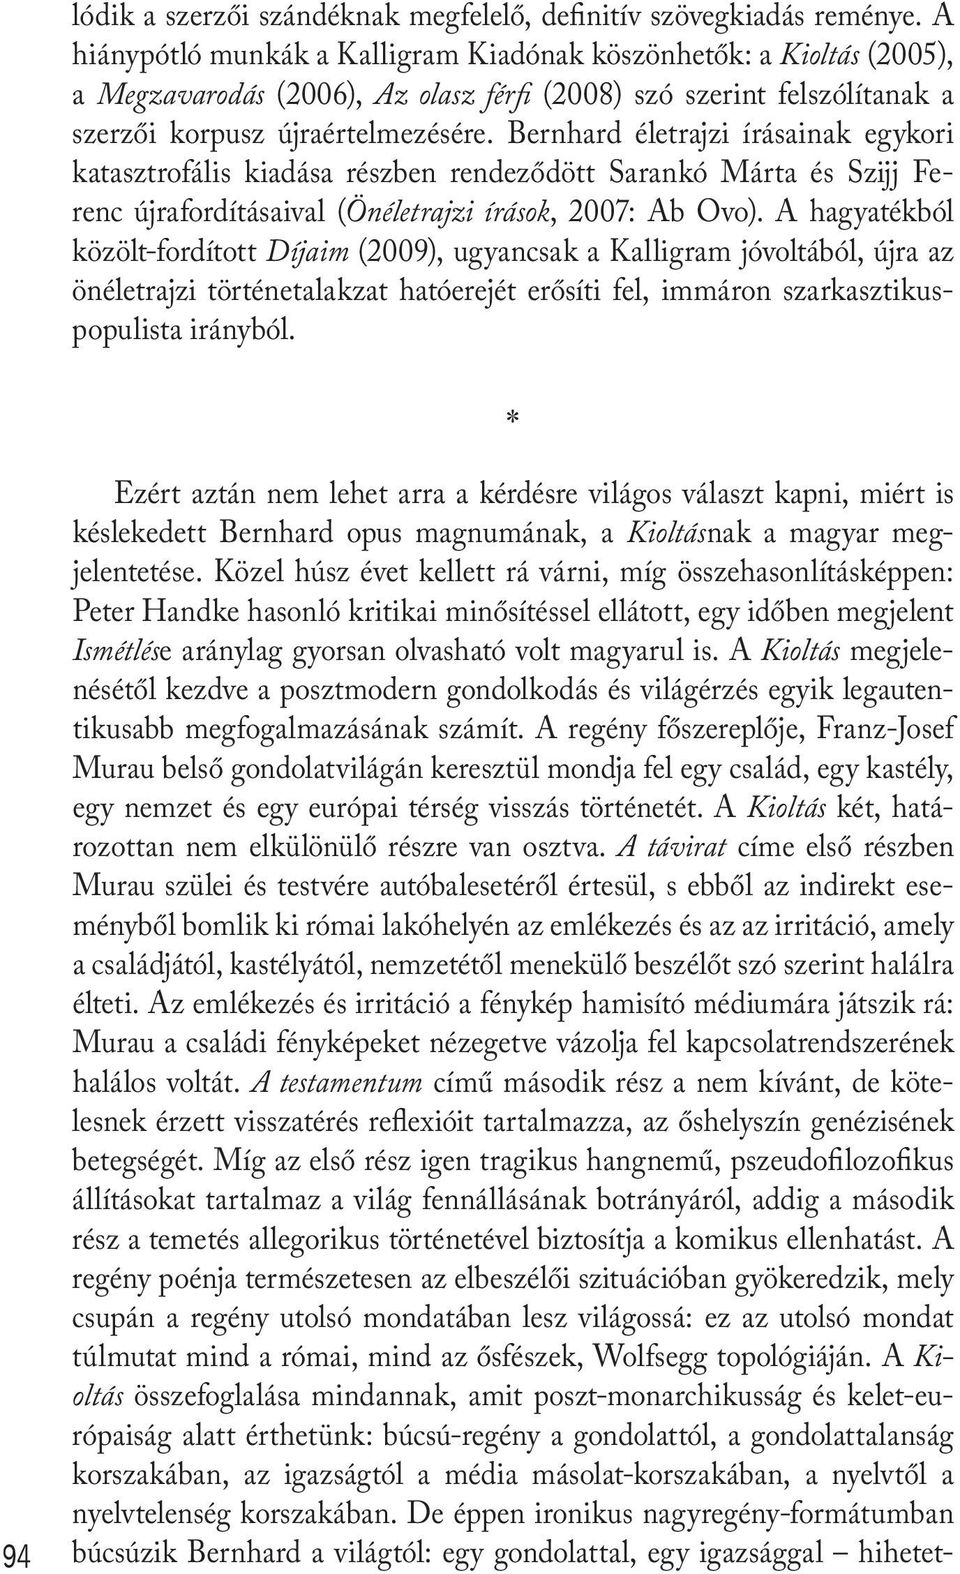 Bernhard életrajzi írásainak egykori katasztrofális kiadása részben rendeződött Sarankó Márta és Szijj Ferenc újrafordításaival (Önéletrajzi írások, 2007: Ab Ovo).